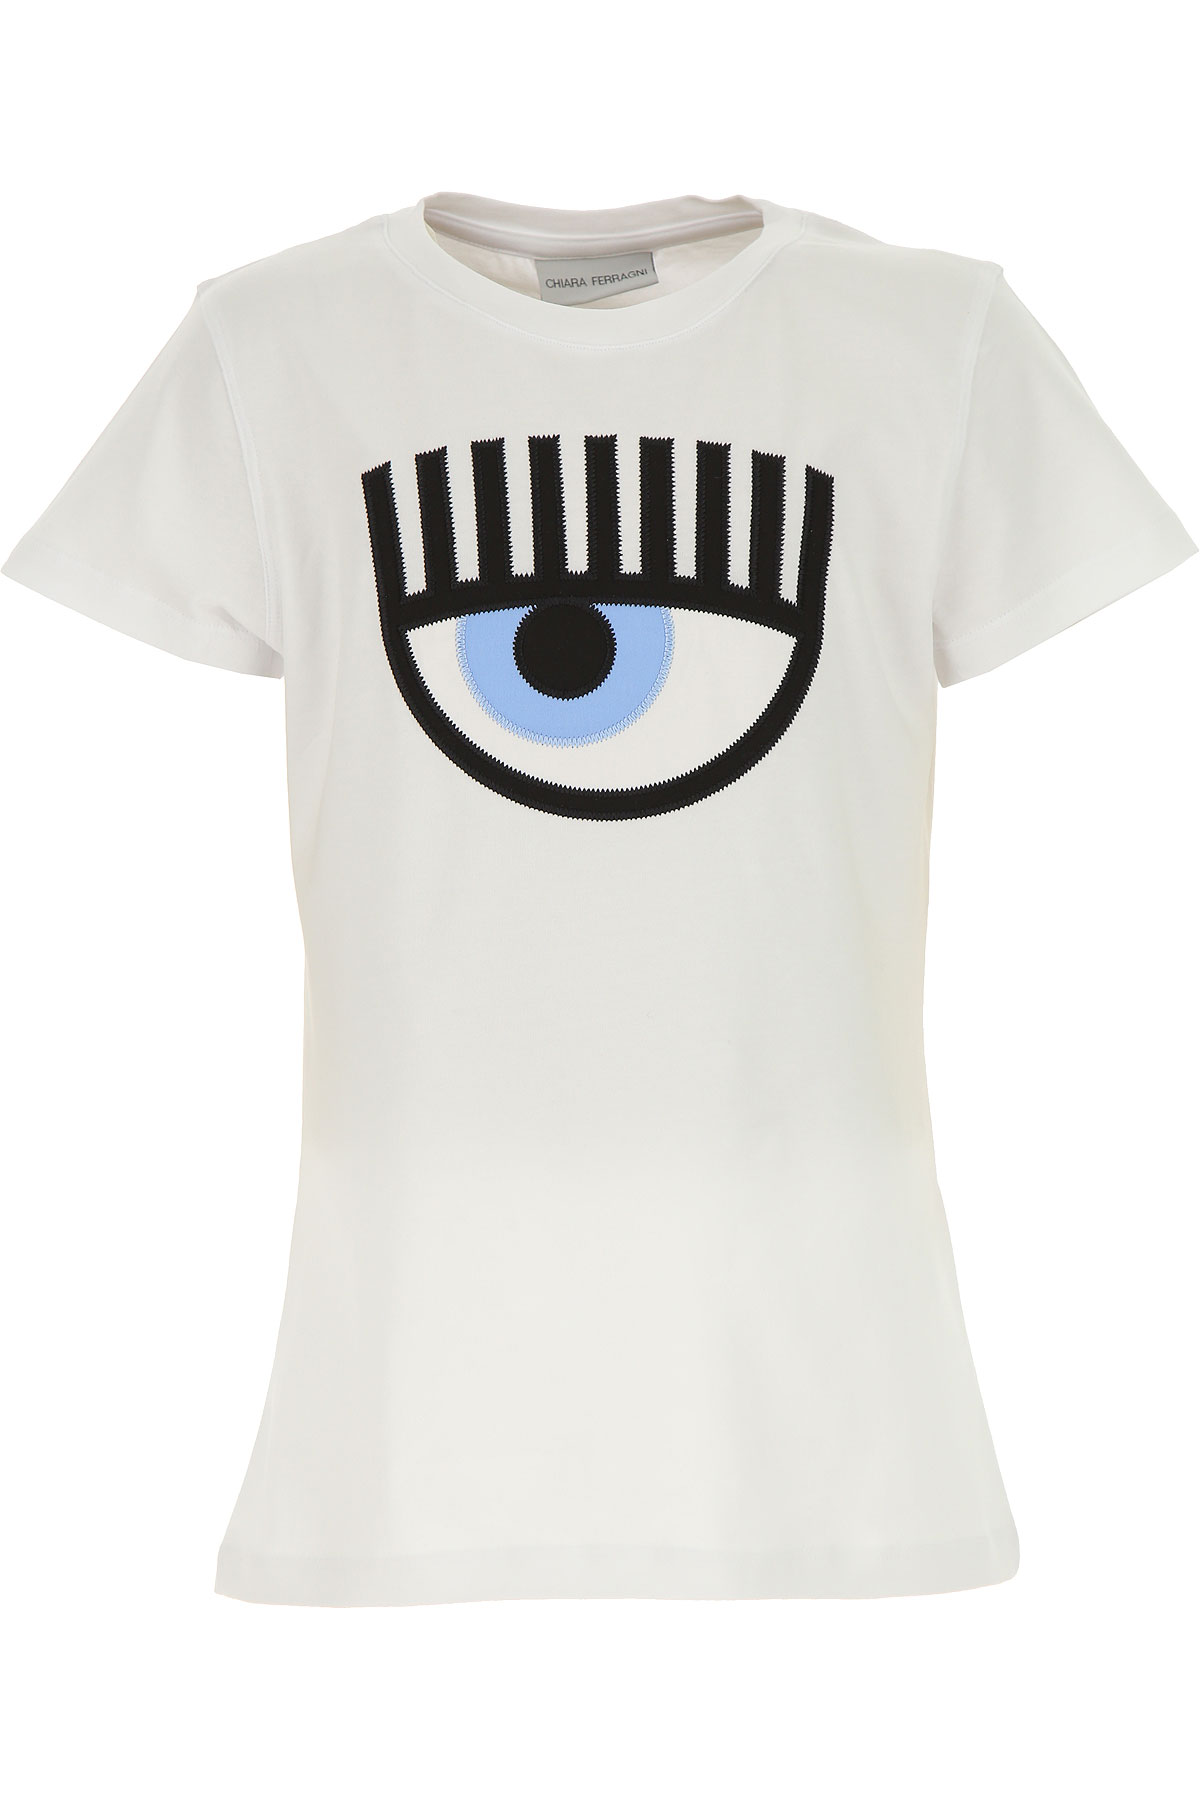 Chiara Ferragni Kinder T-Shirt für Mädchen Günstig im Sale, Weiss, Baumwolle, 2017, 10Y 12Y 14Y 6Y 8Y